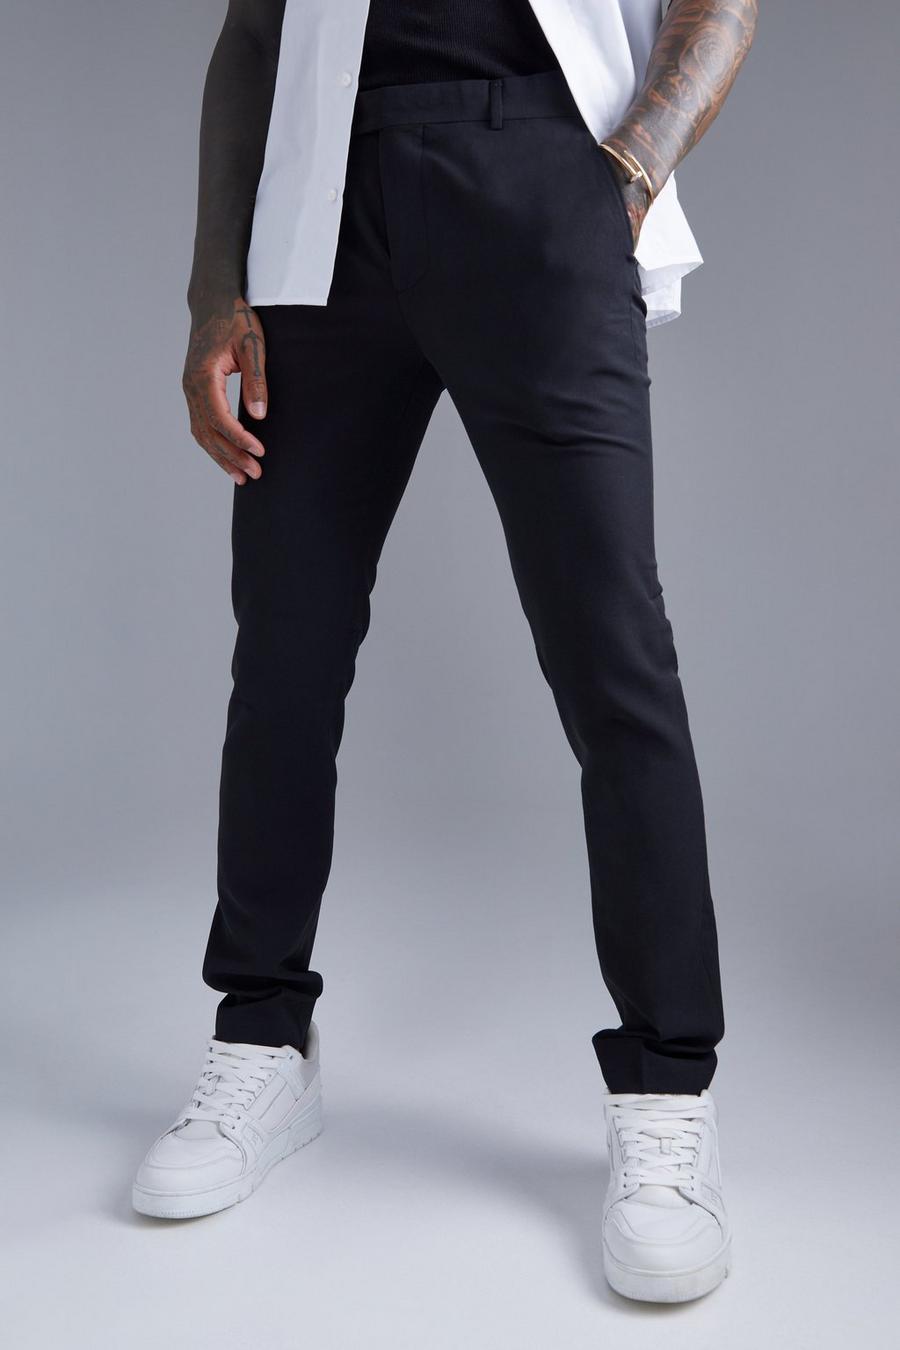 Black noir Skinny Smart Plain Trouser With Chain